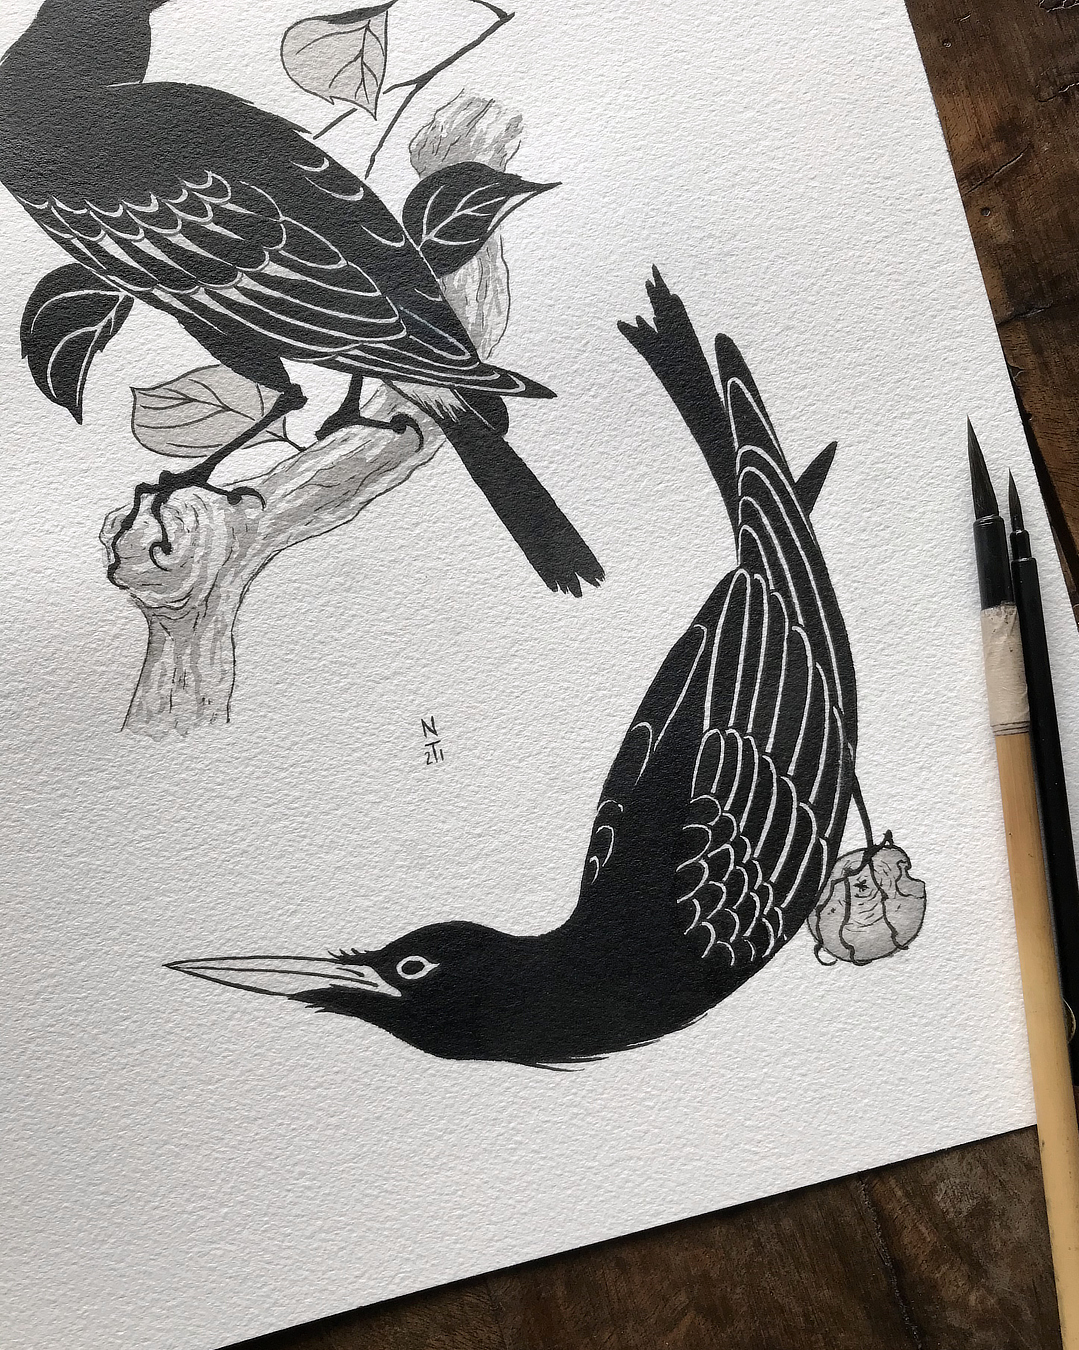 tatuto-corneille-tattoo-flash-tatouage-oiseau-bird-illustration-2